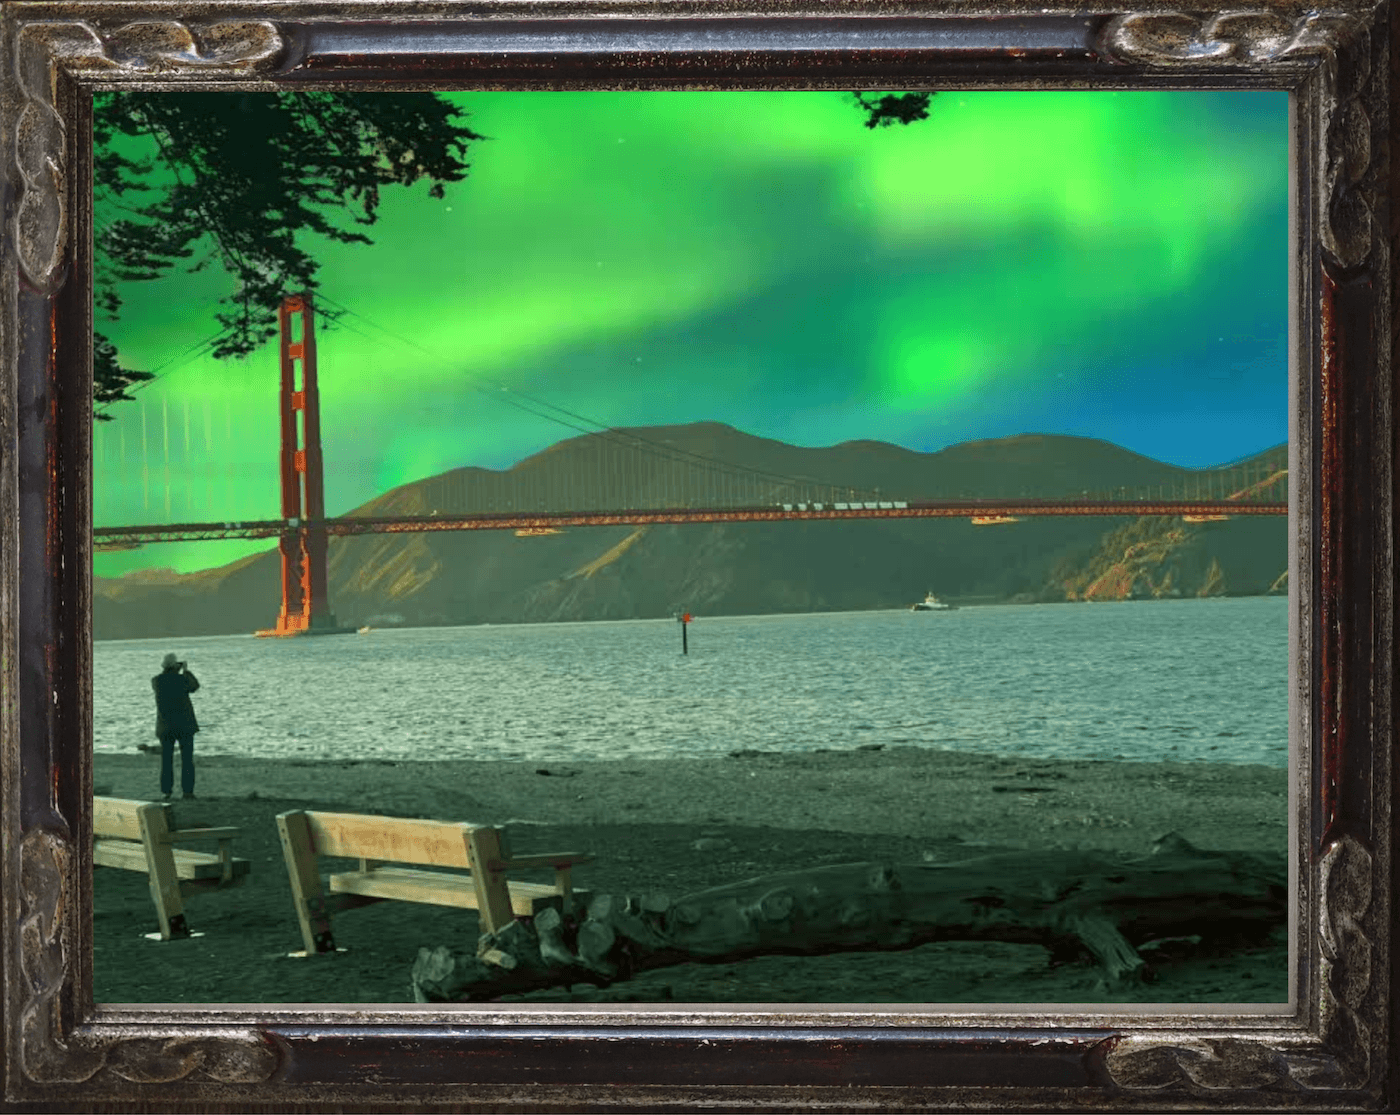 NorCal Lights 01 - Golden Gate Bridge